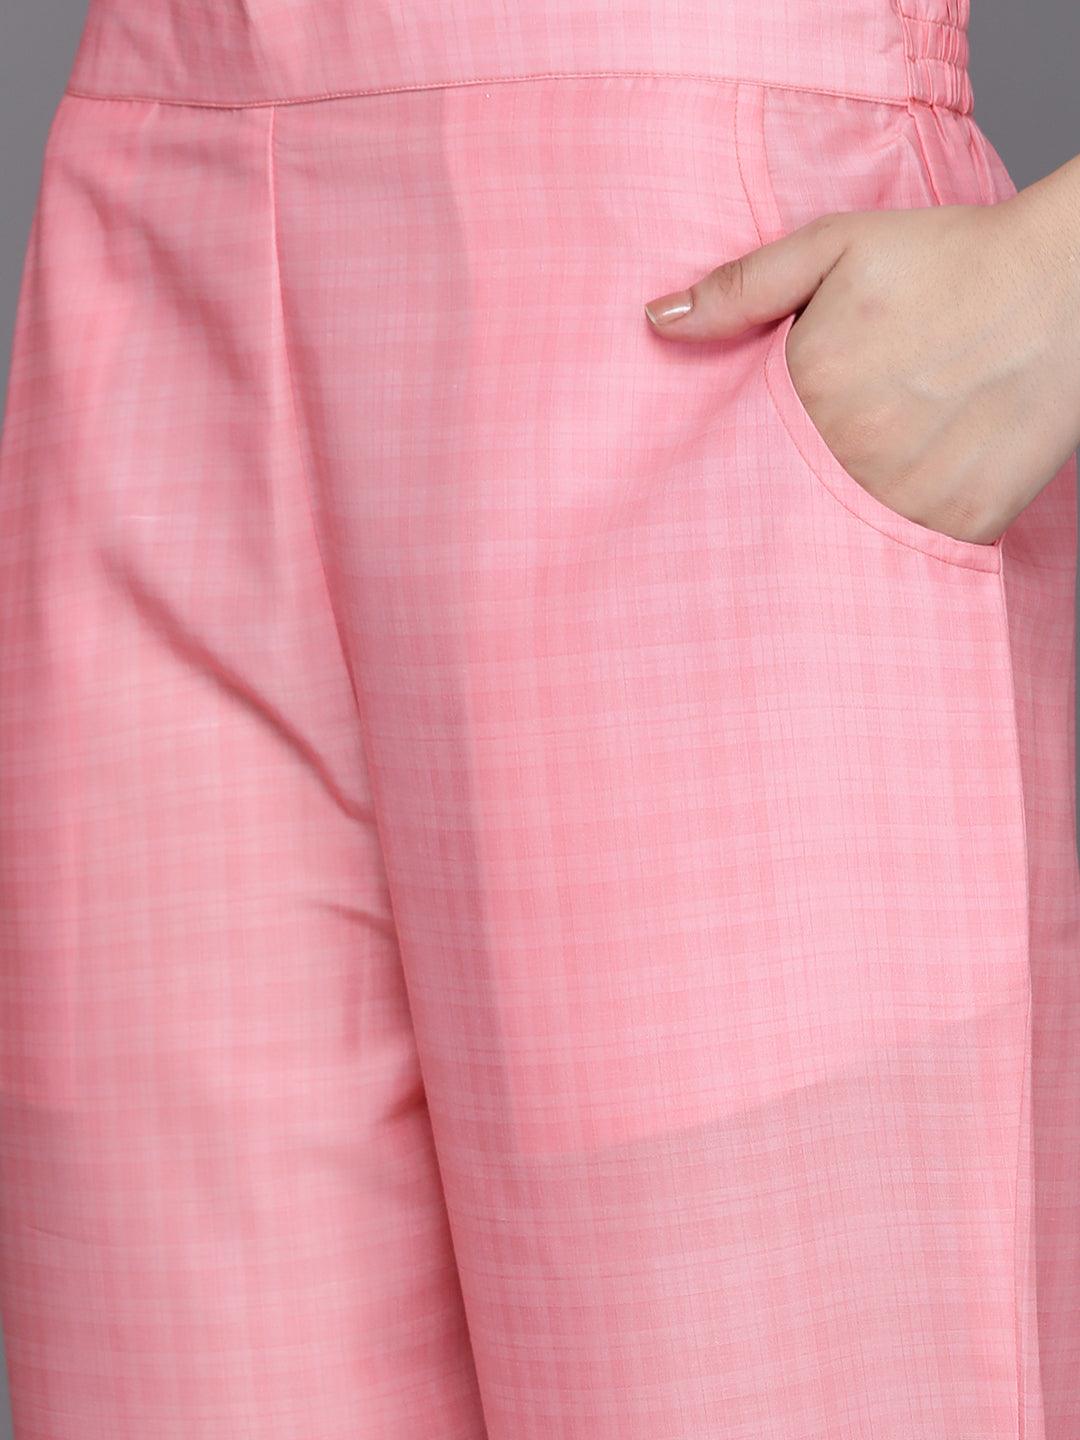 Pink Printed Silk Blend Kaftan Kaftan With Trousers